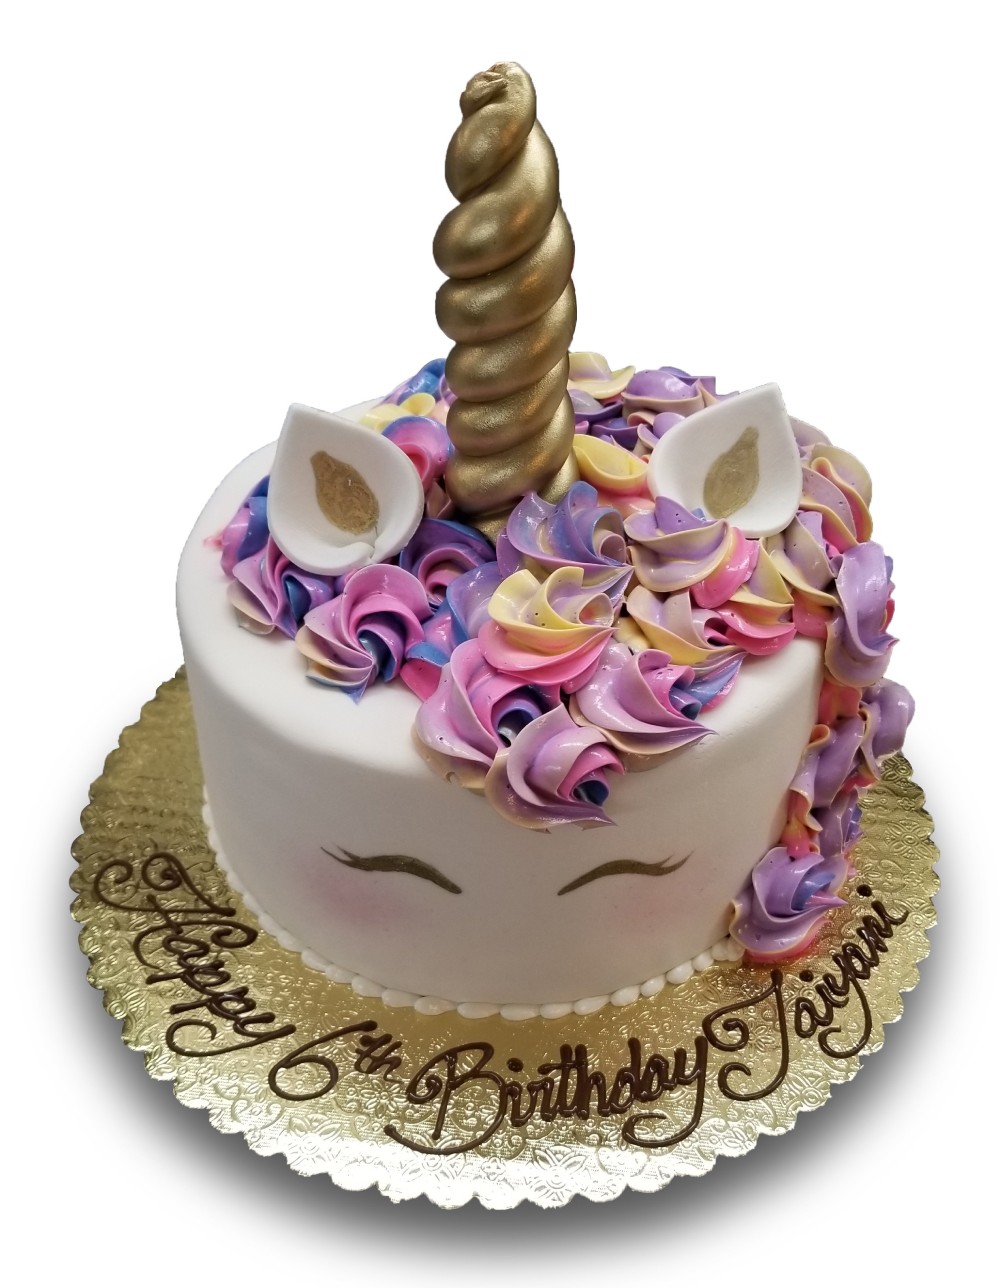 Fondant covered unicorn cake